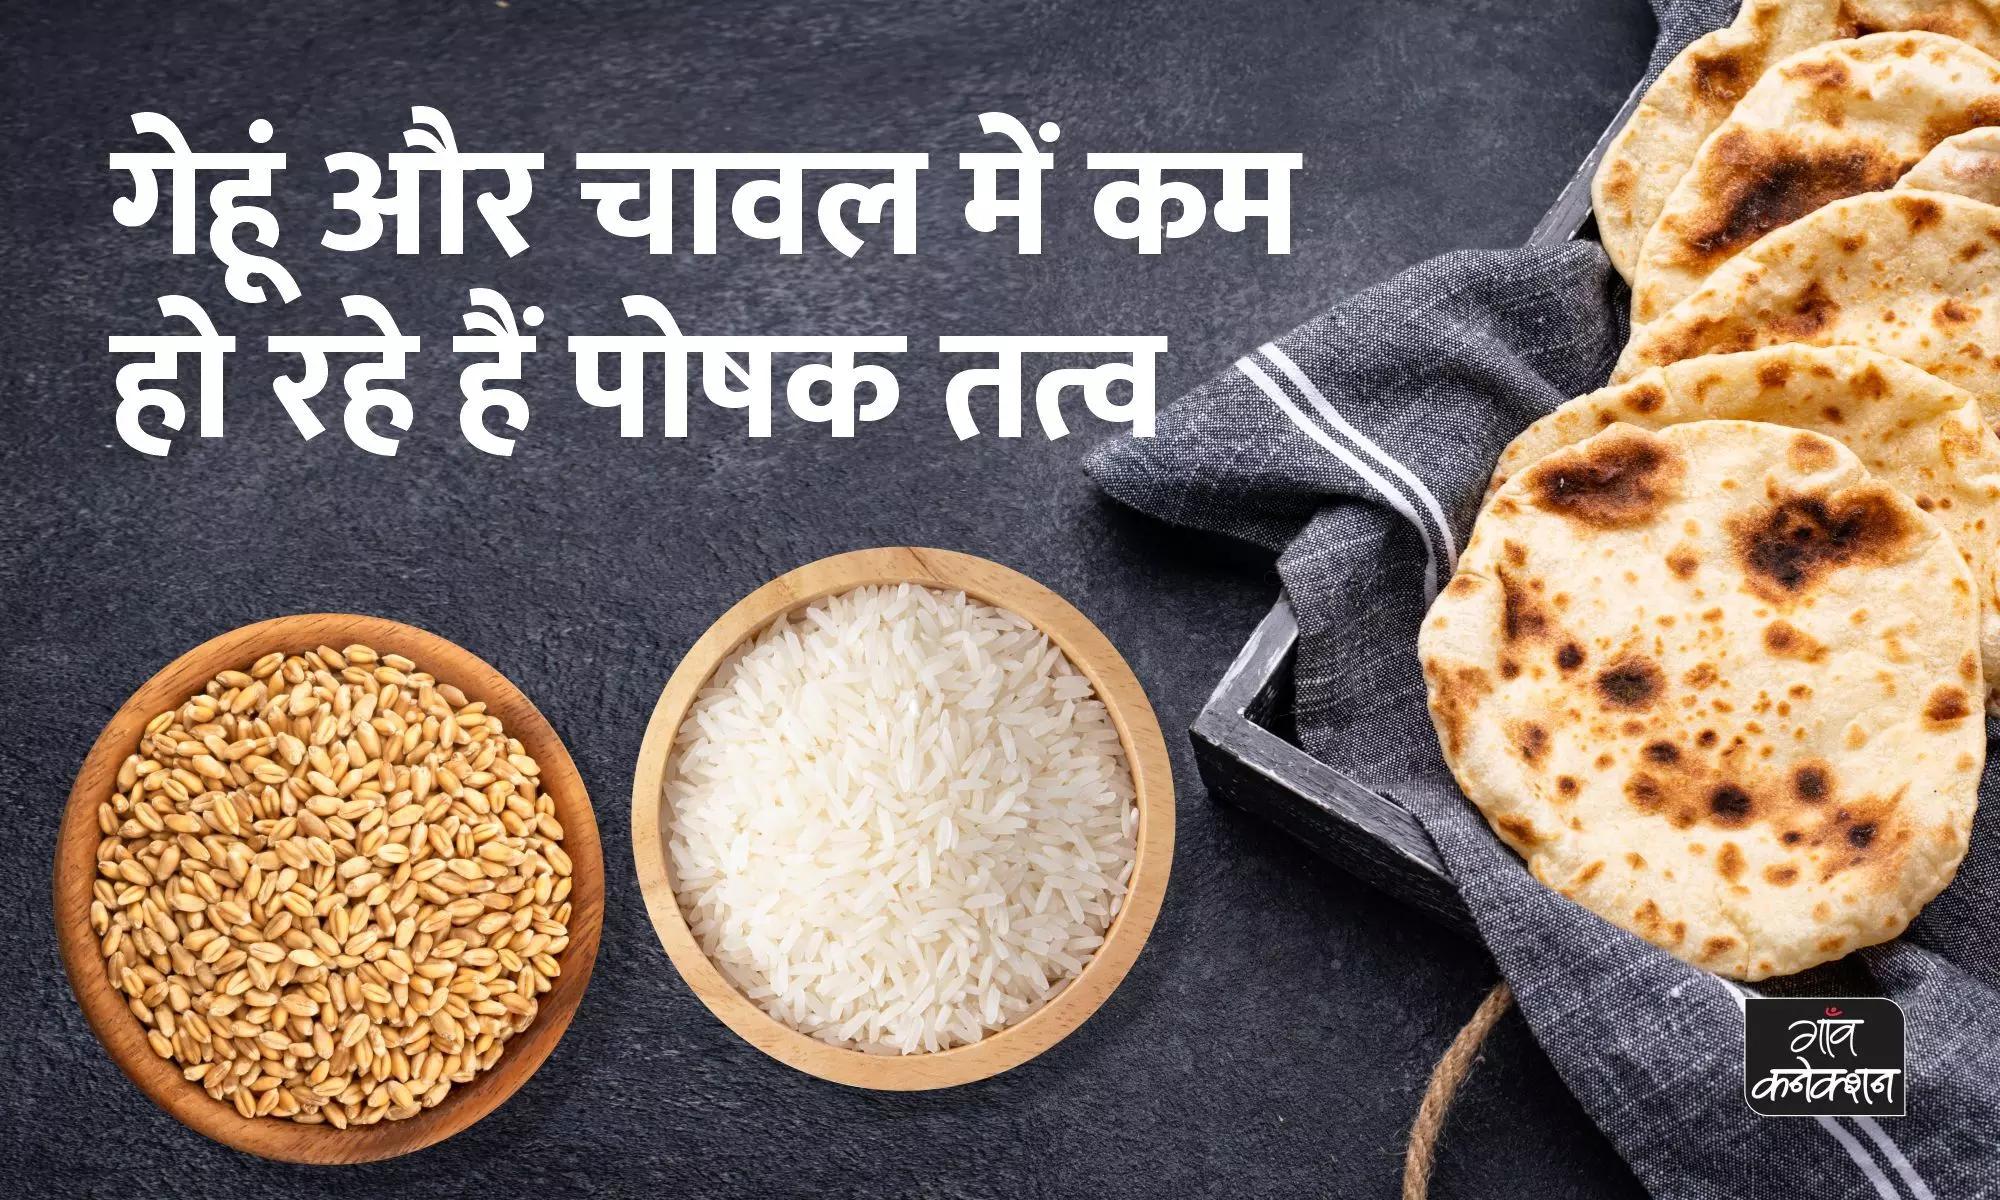 आपकी थाली में मौजूद चावल और रोटी में कम हो रहे हैं पोषक तत्व